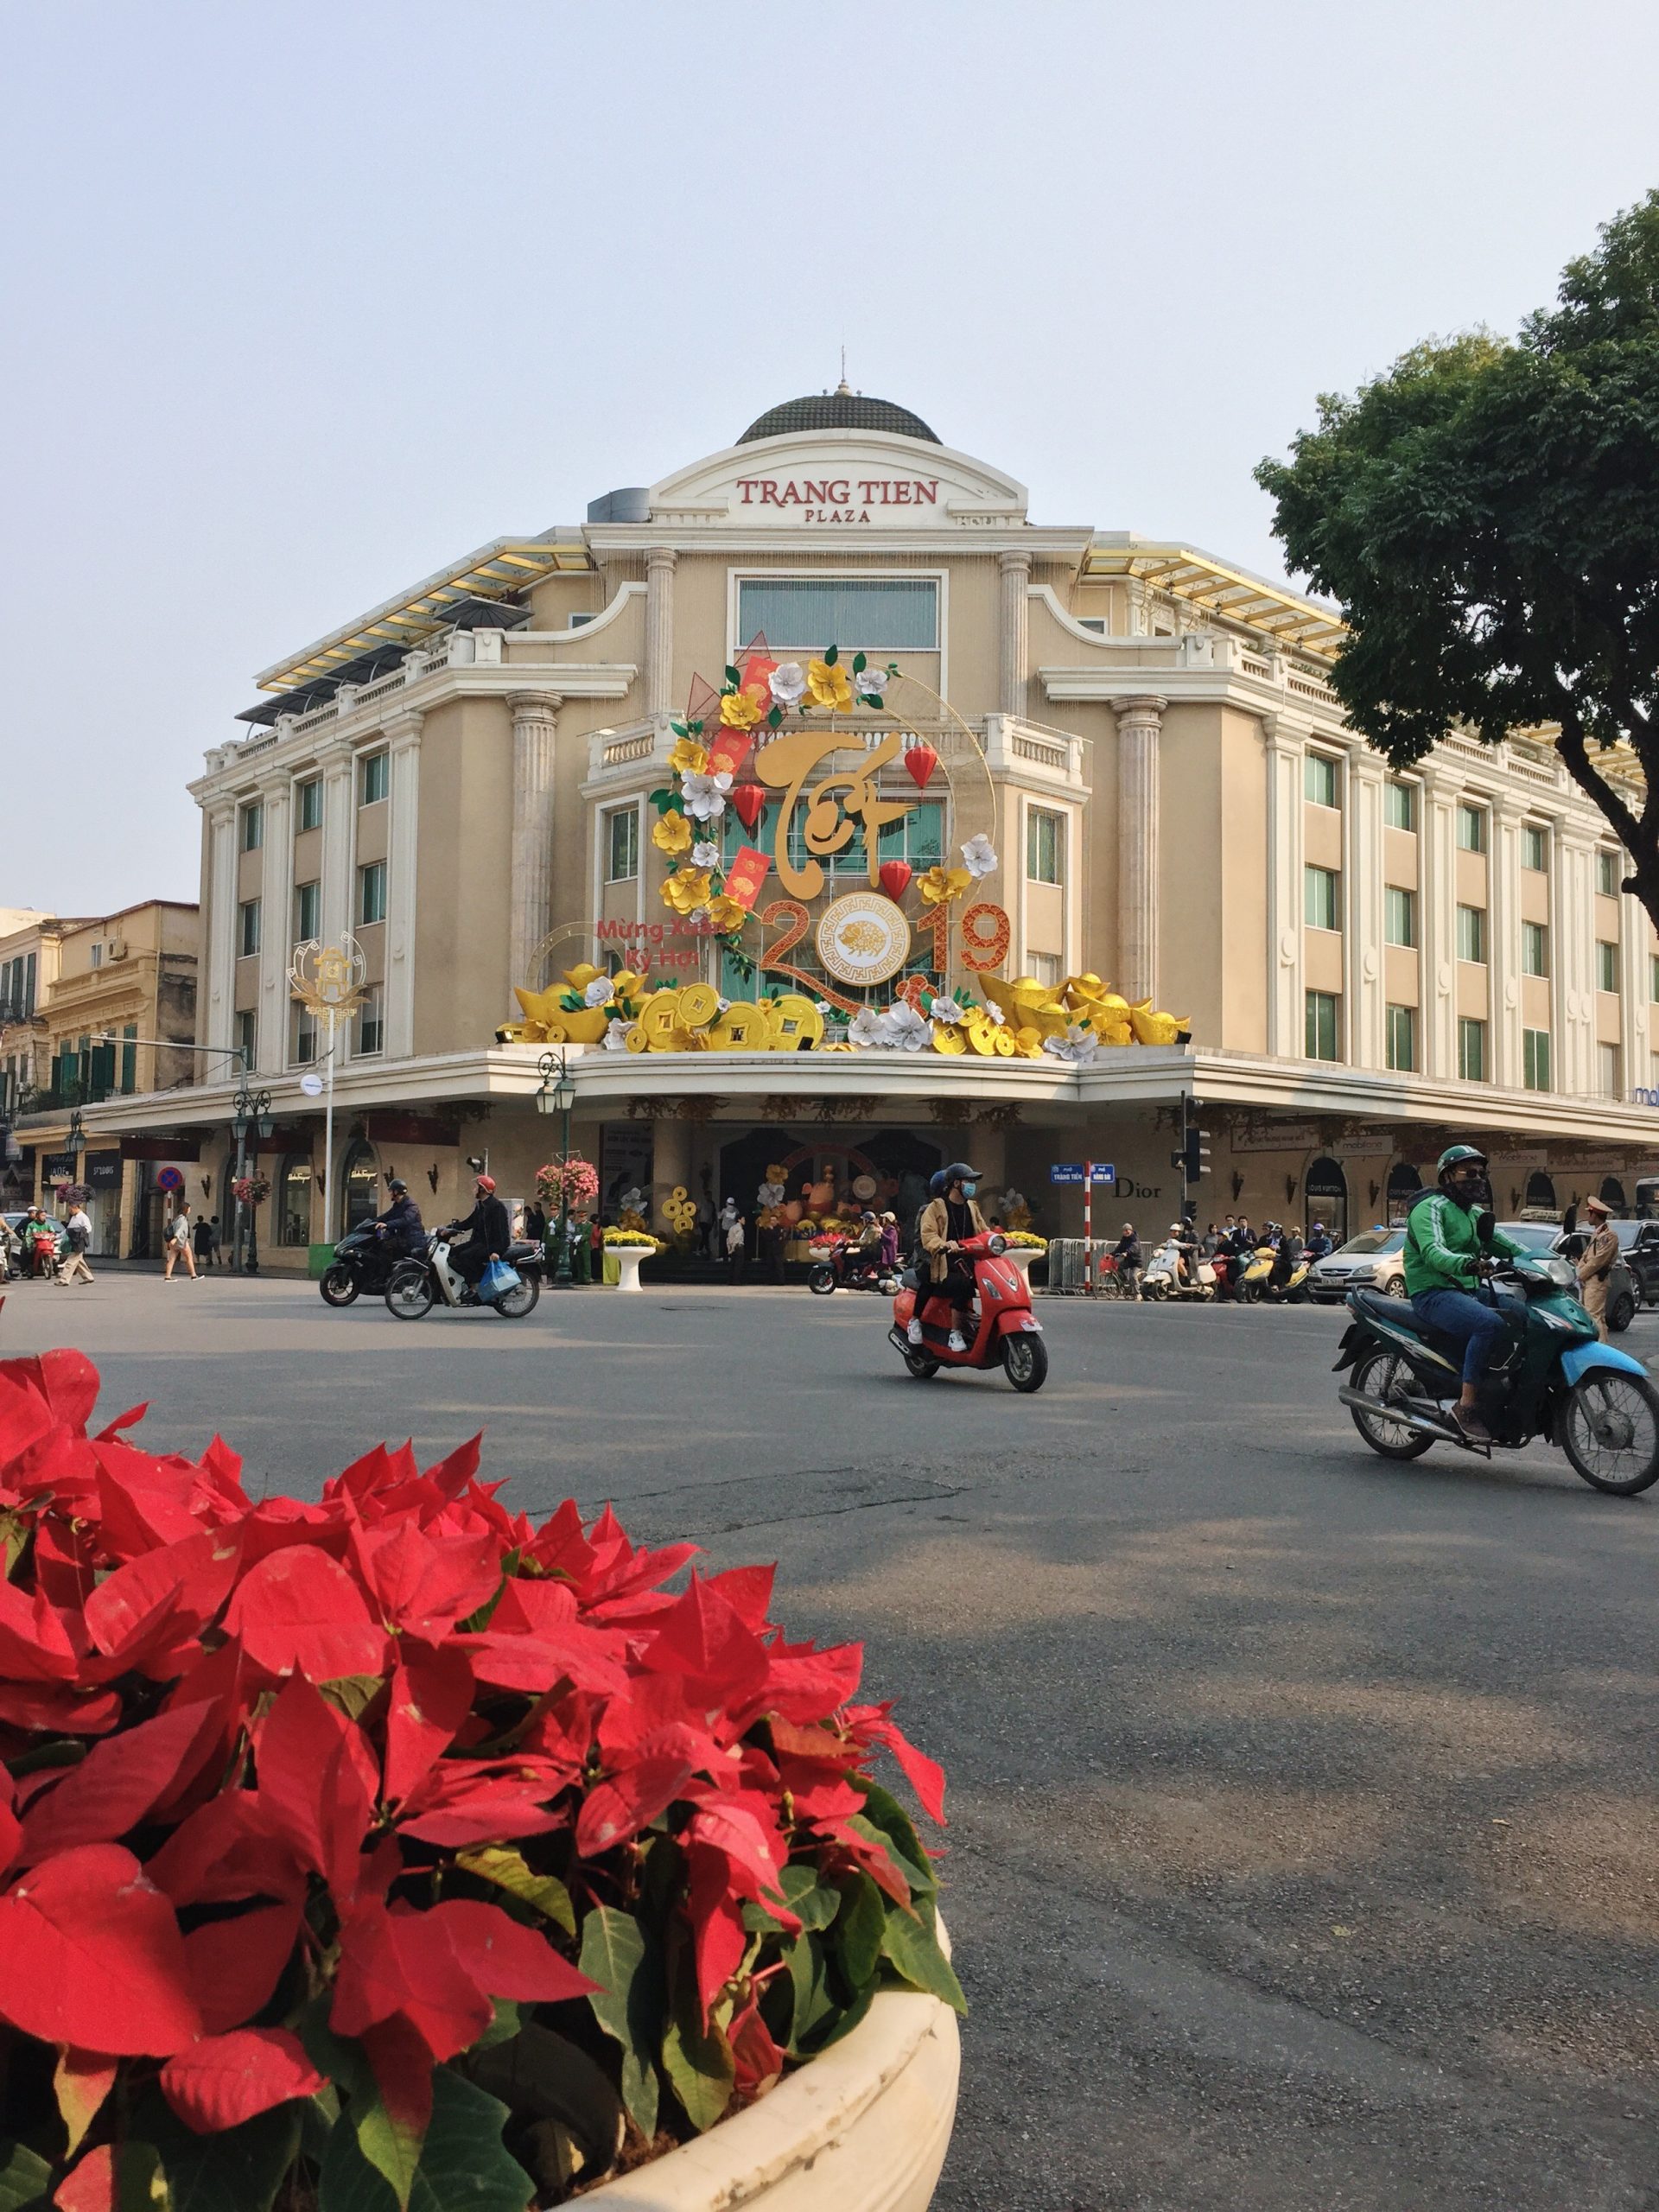 Trang-tien-plaza-Hanoi